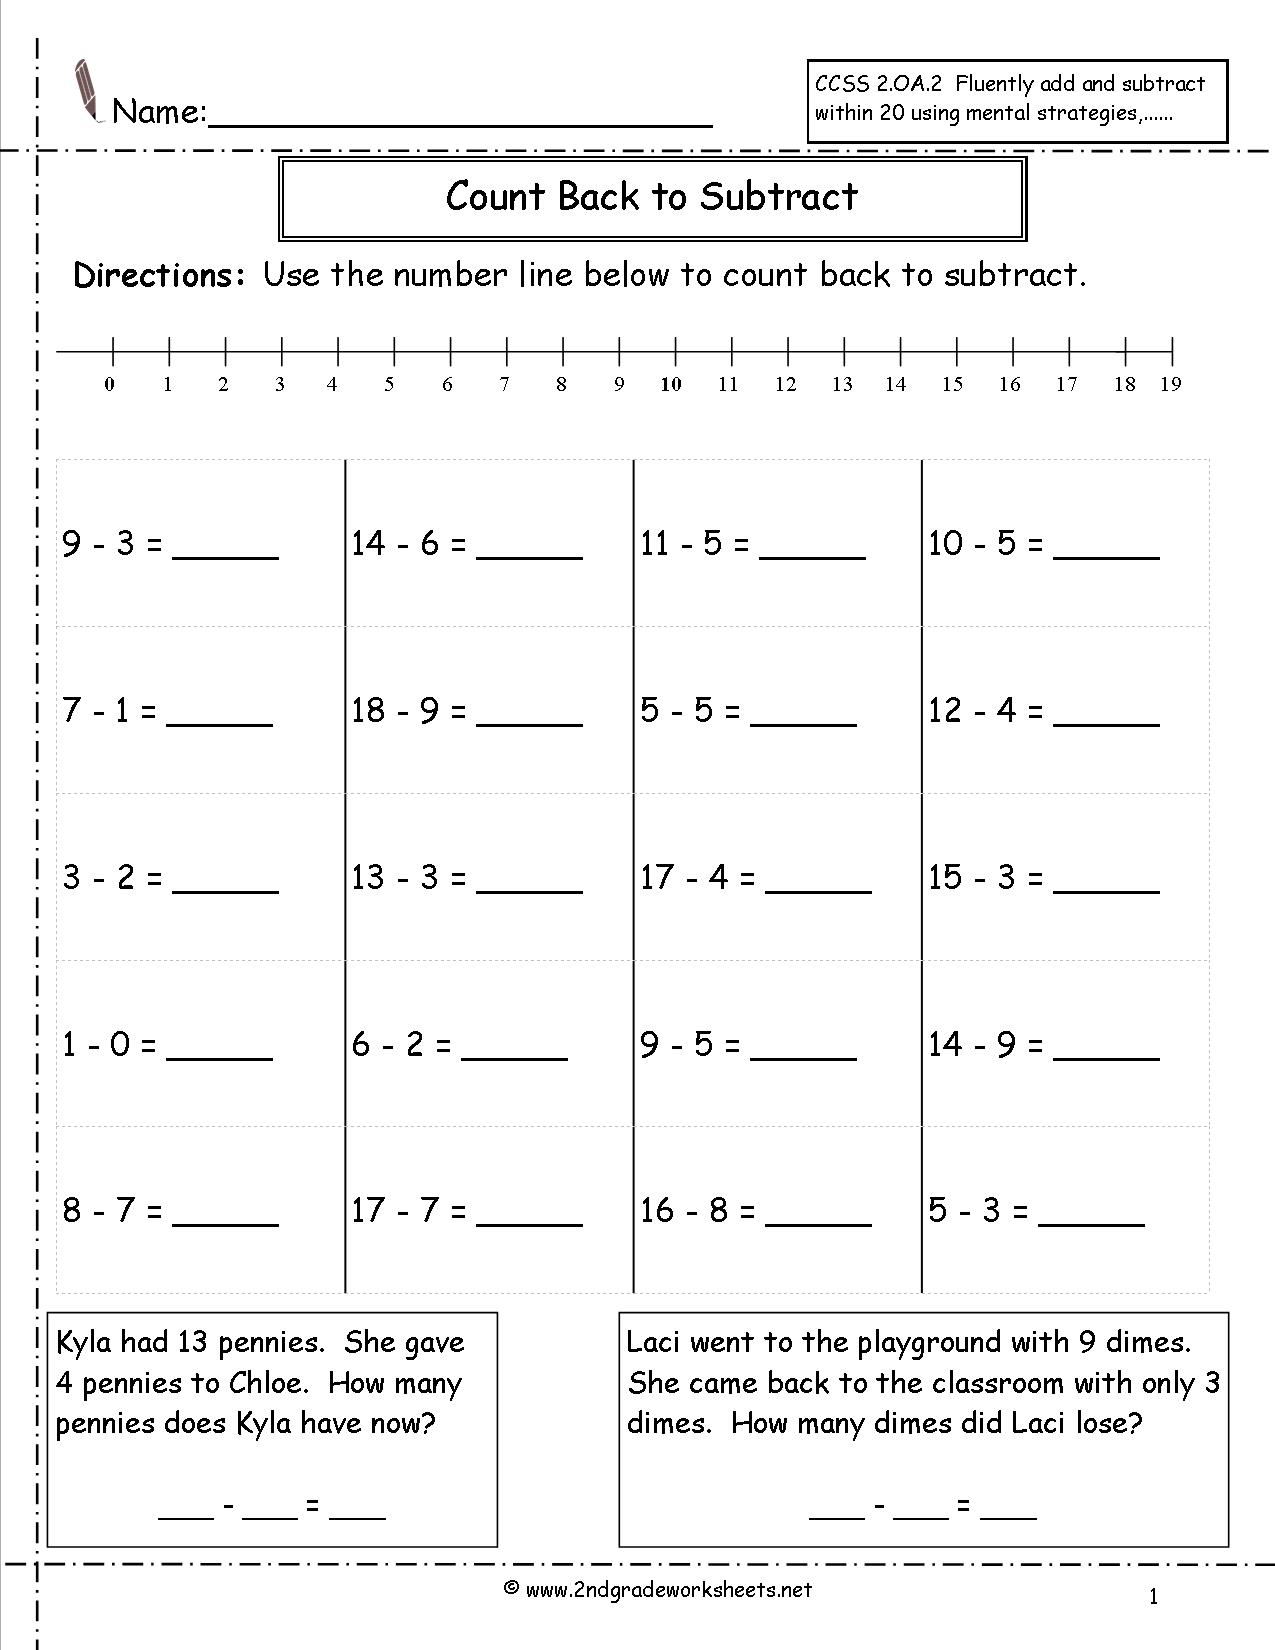 Number Line Subtraction Worksheet Grade 2 Image